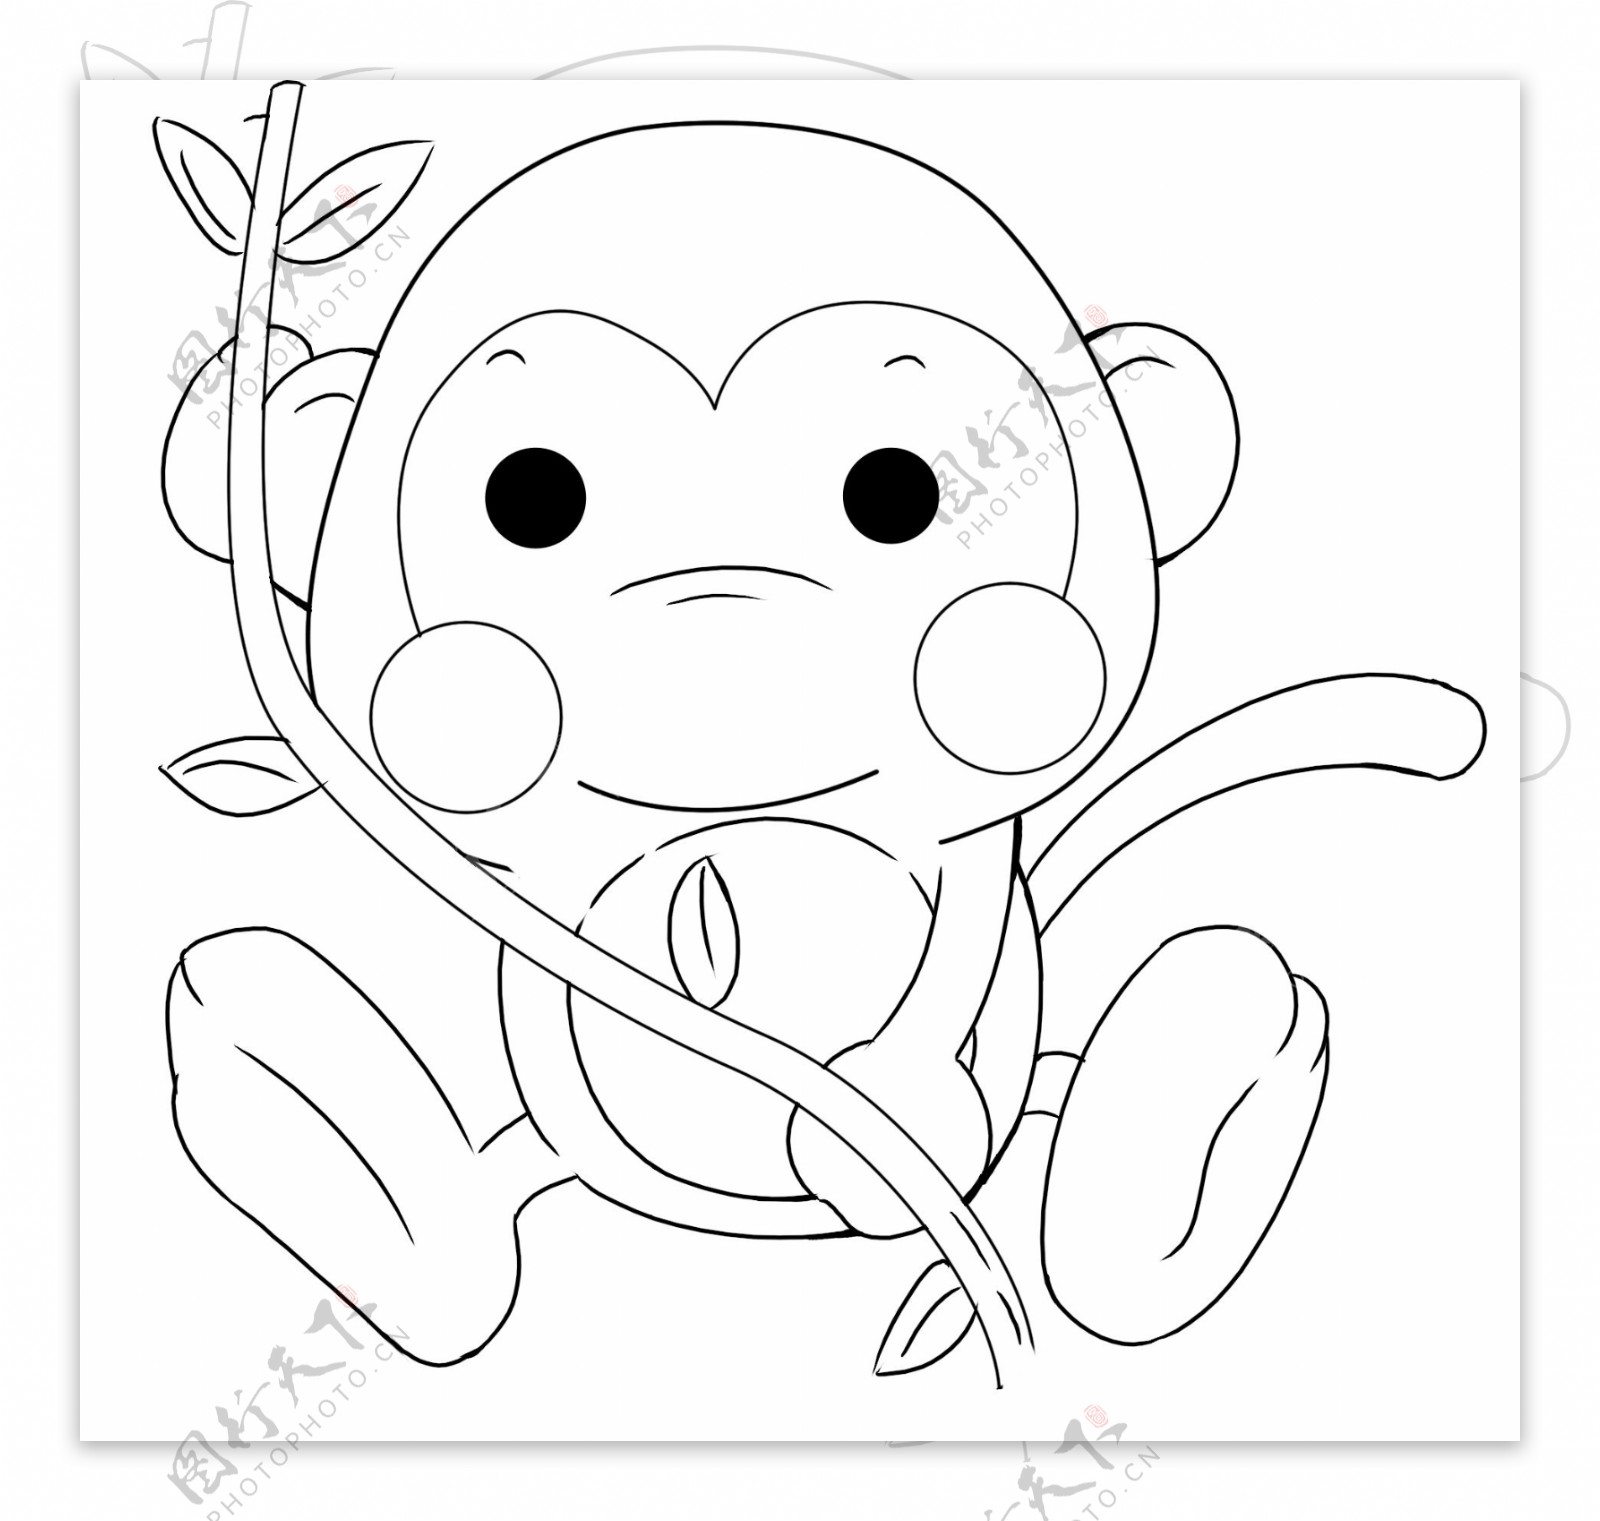 有趣的小猴子：小猴子品尝彩色果冻，像冰糖葫芦一样好吃？-小猴子儿童乐园-小猴子儿童乐园-哔哩哔哩视频